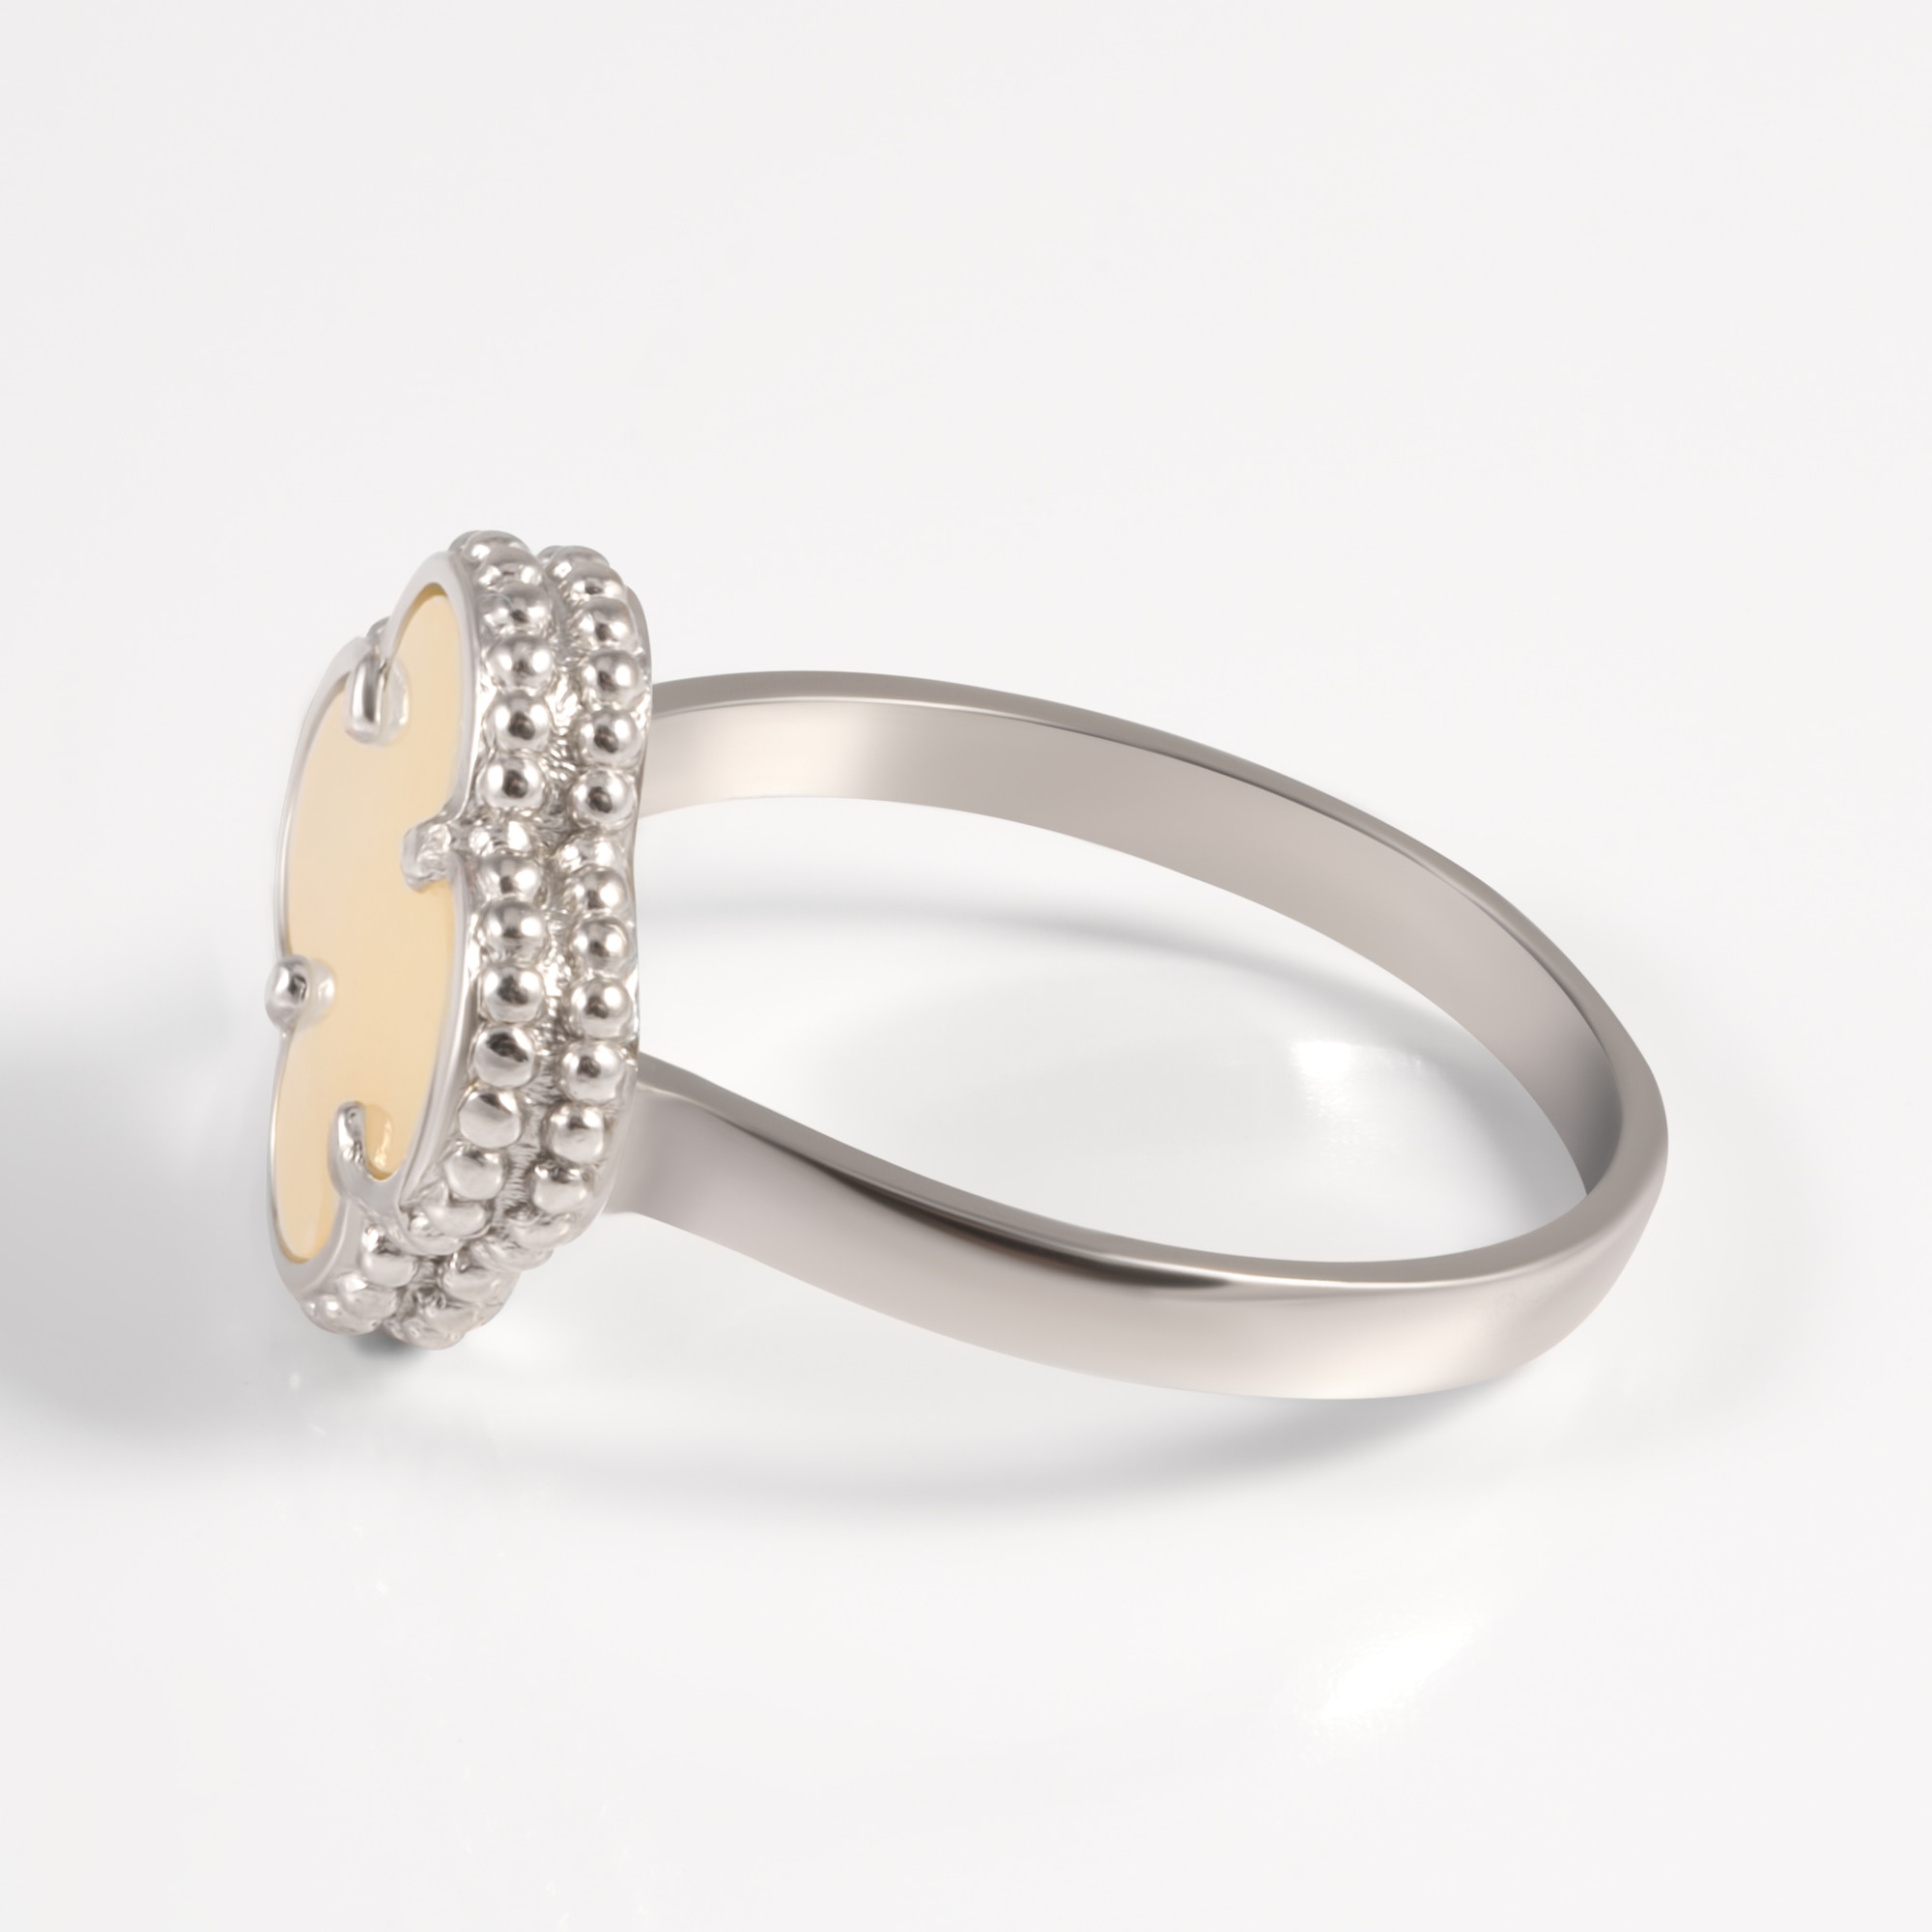 Серебряное кольцо Liberty  из серебра 925 пробы со вставками из полудрагоценных камней (перламутр) РЫ10002532, размеры от 16 до 18.5